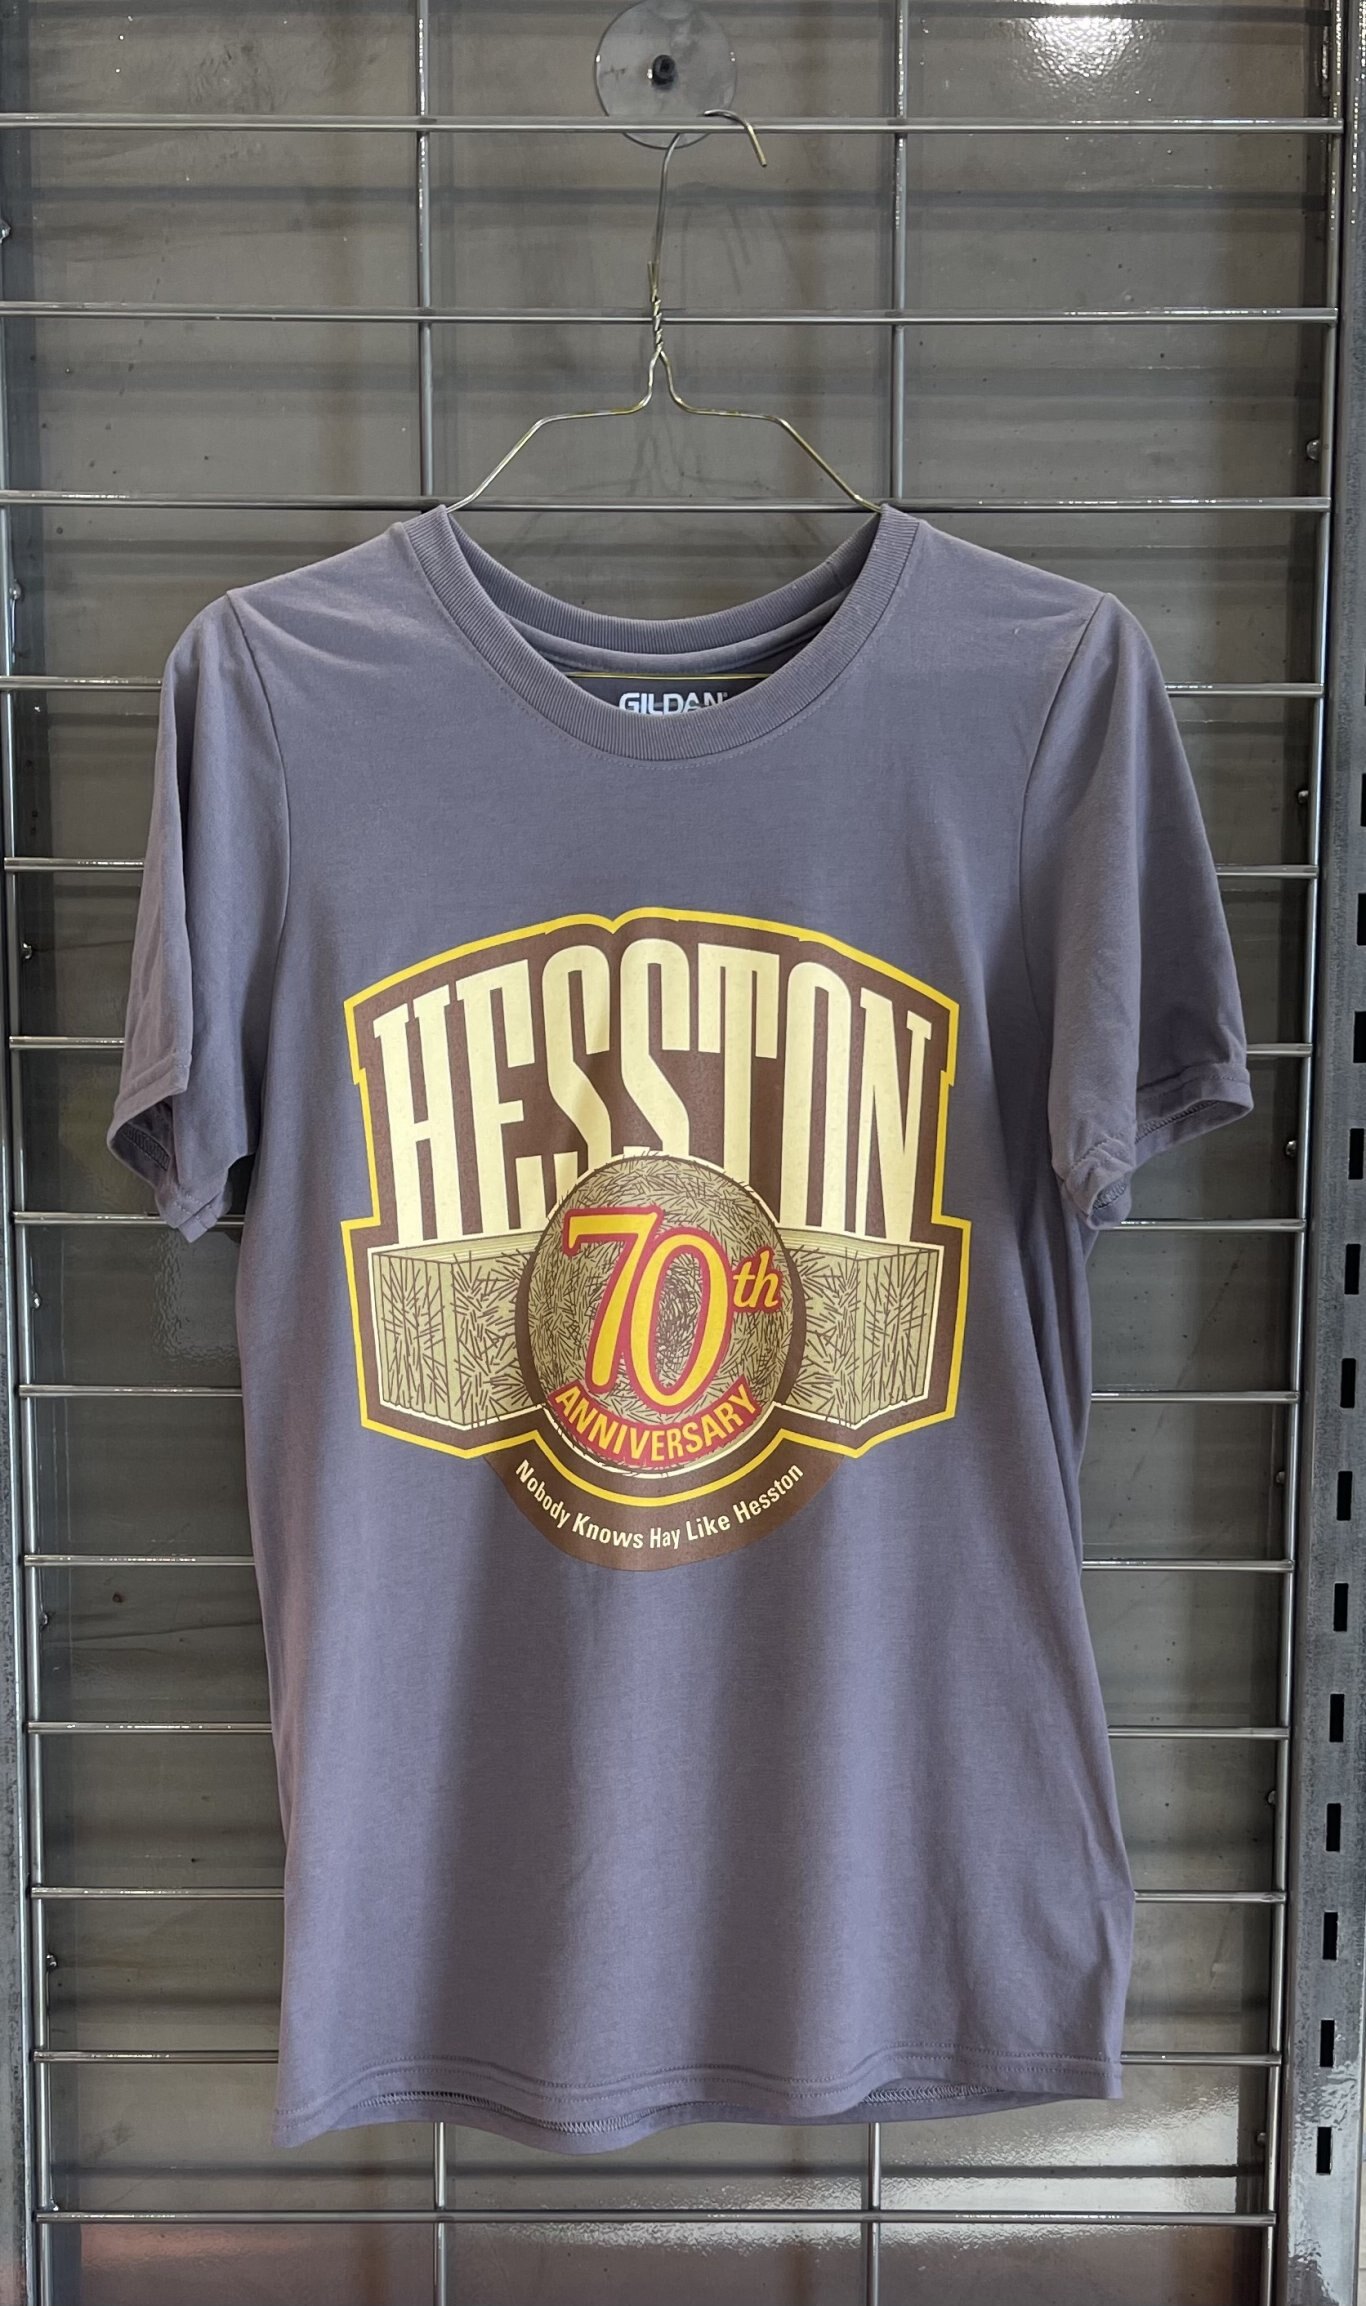 Hesston 70th Anniversary T Shirt S